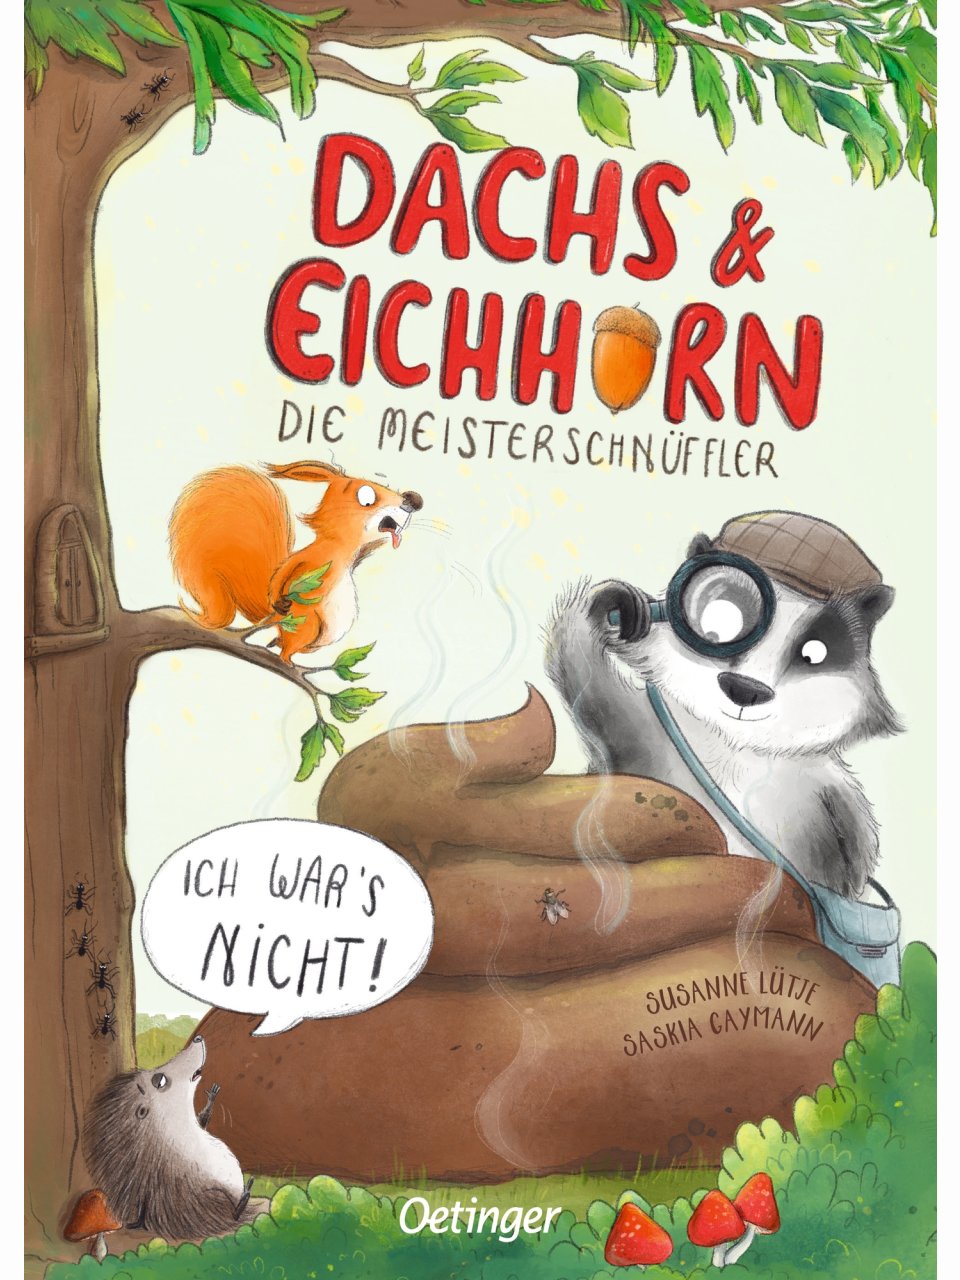 Dachs & Eichhorn – Die Meisterschnüffler